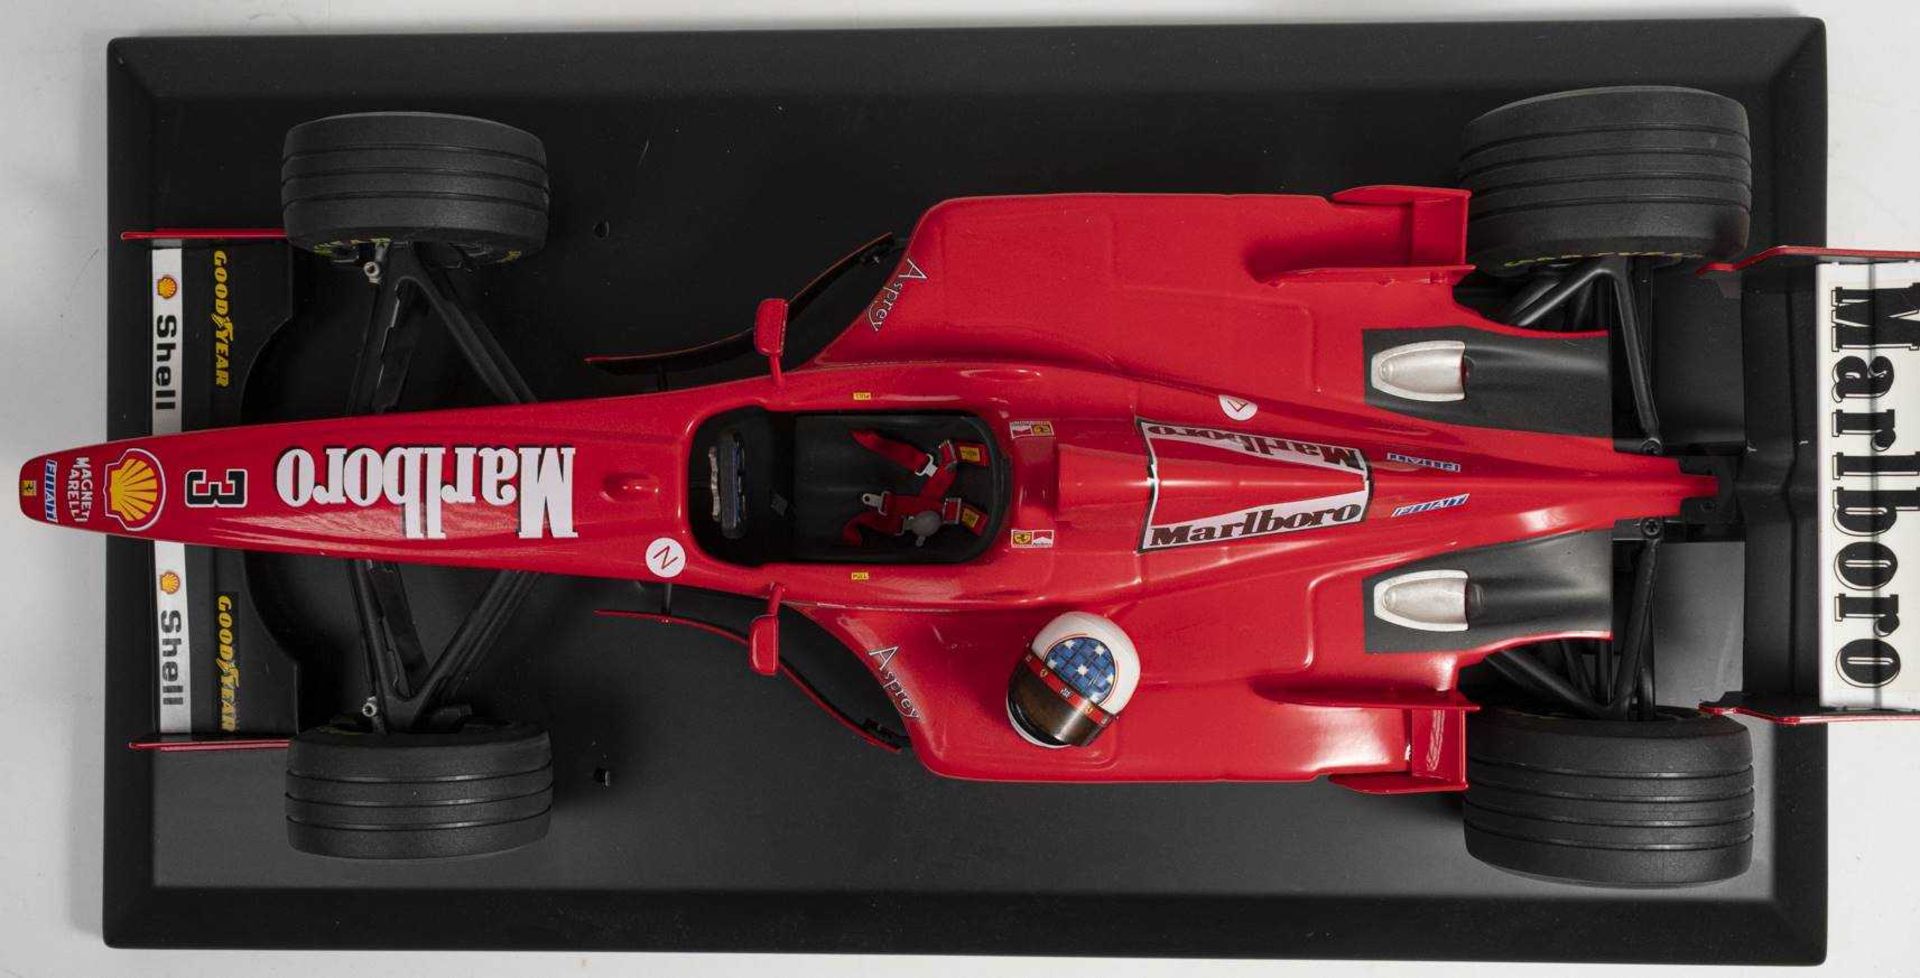 1998, FERRARI F 300 im Großmaßstab 1:8, Fahrer Michael Schumacher, Start Nr. 3, limitierte Auflage 1 - Bild 4 aus 6